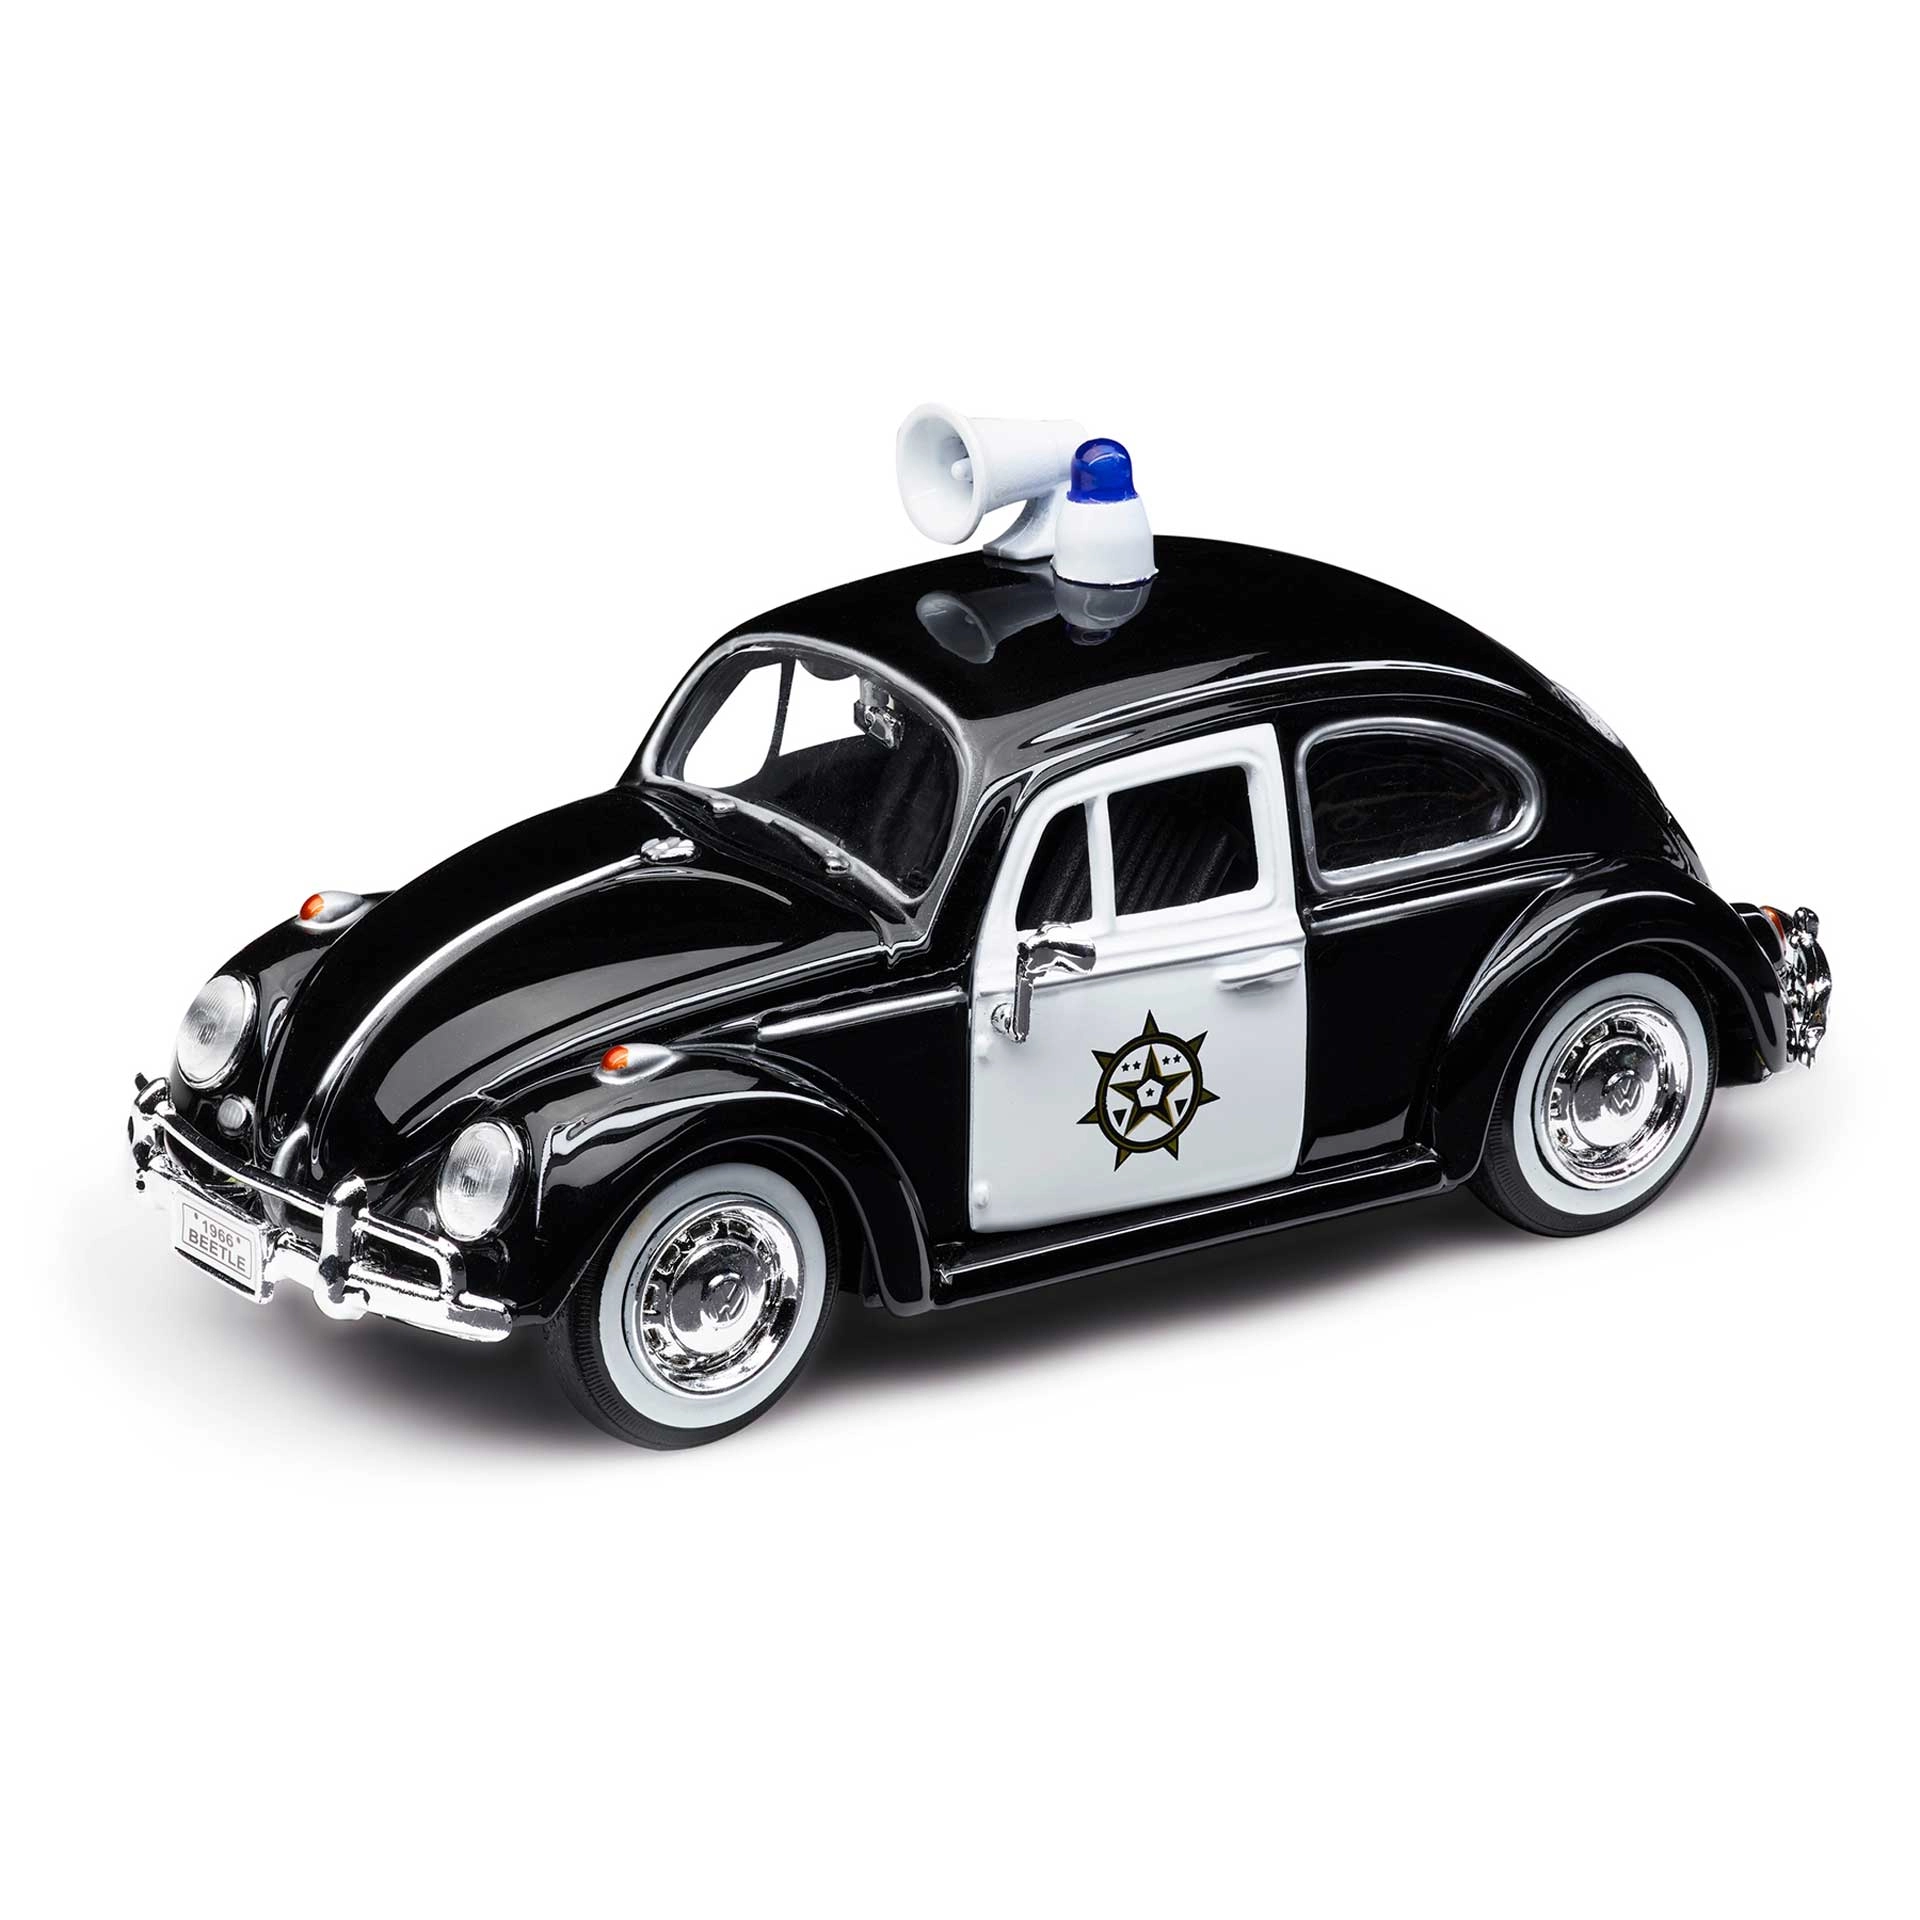 1h2099303 volkswagen modellauto kaefer polizei 1zu24 rosier onlineshop